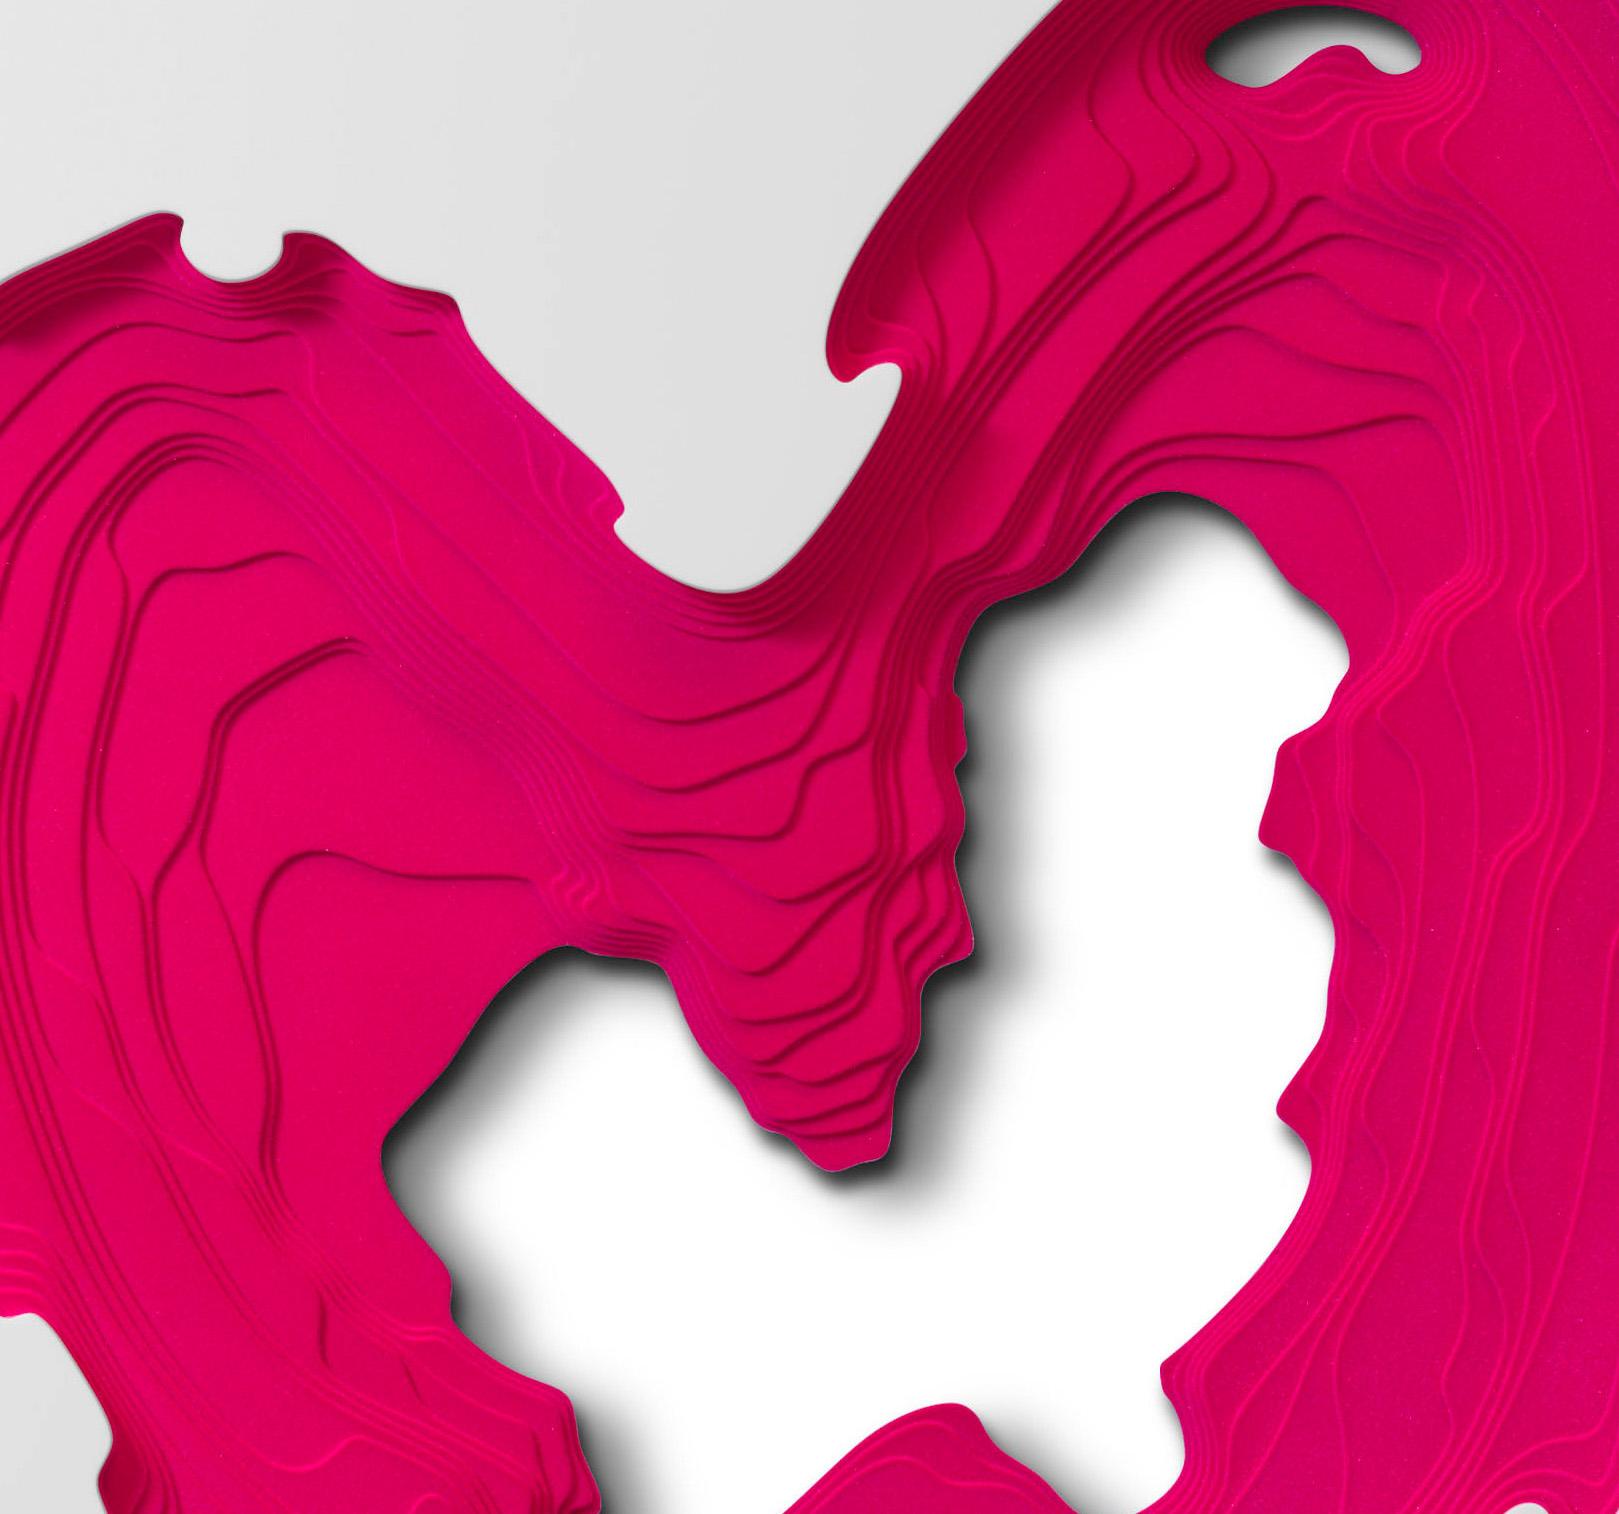 Contour Phoenix (Candy), contemporary, heart, Czech, British, Bespoke, pink - Contemporary Art by Petr Weigl